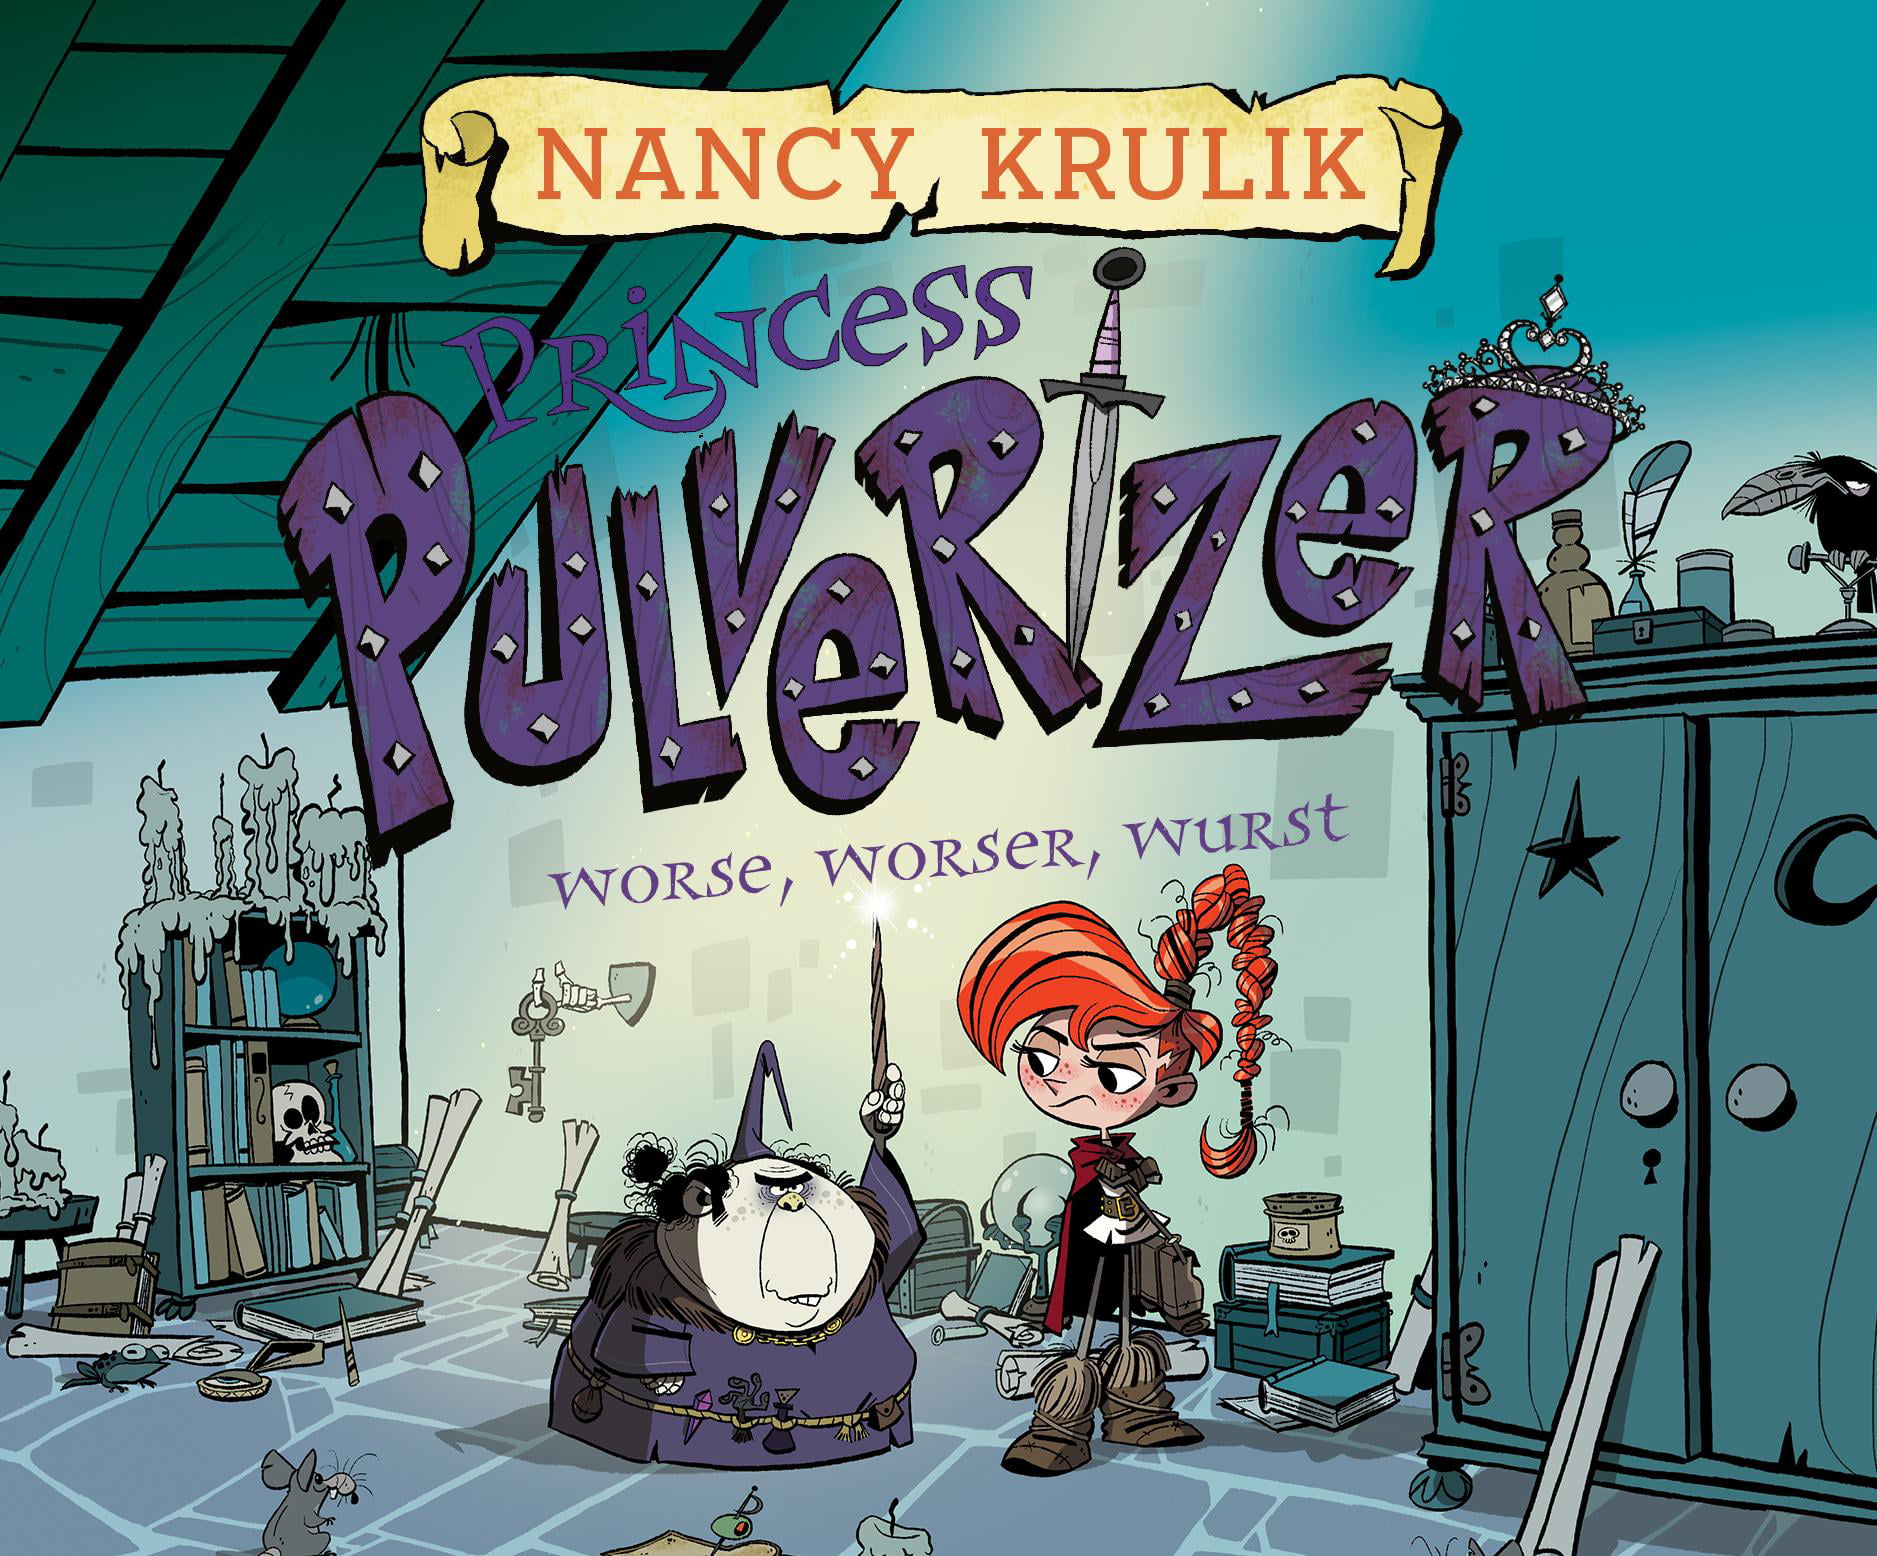 Princess Pulverizer: Worse, Worser, Wurst (Audiobook) - Walmart.com ...